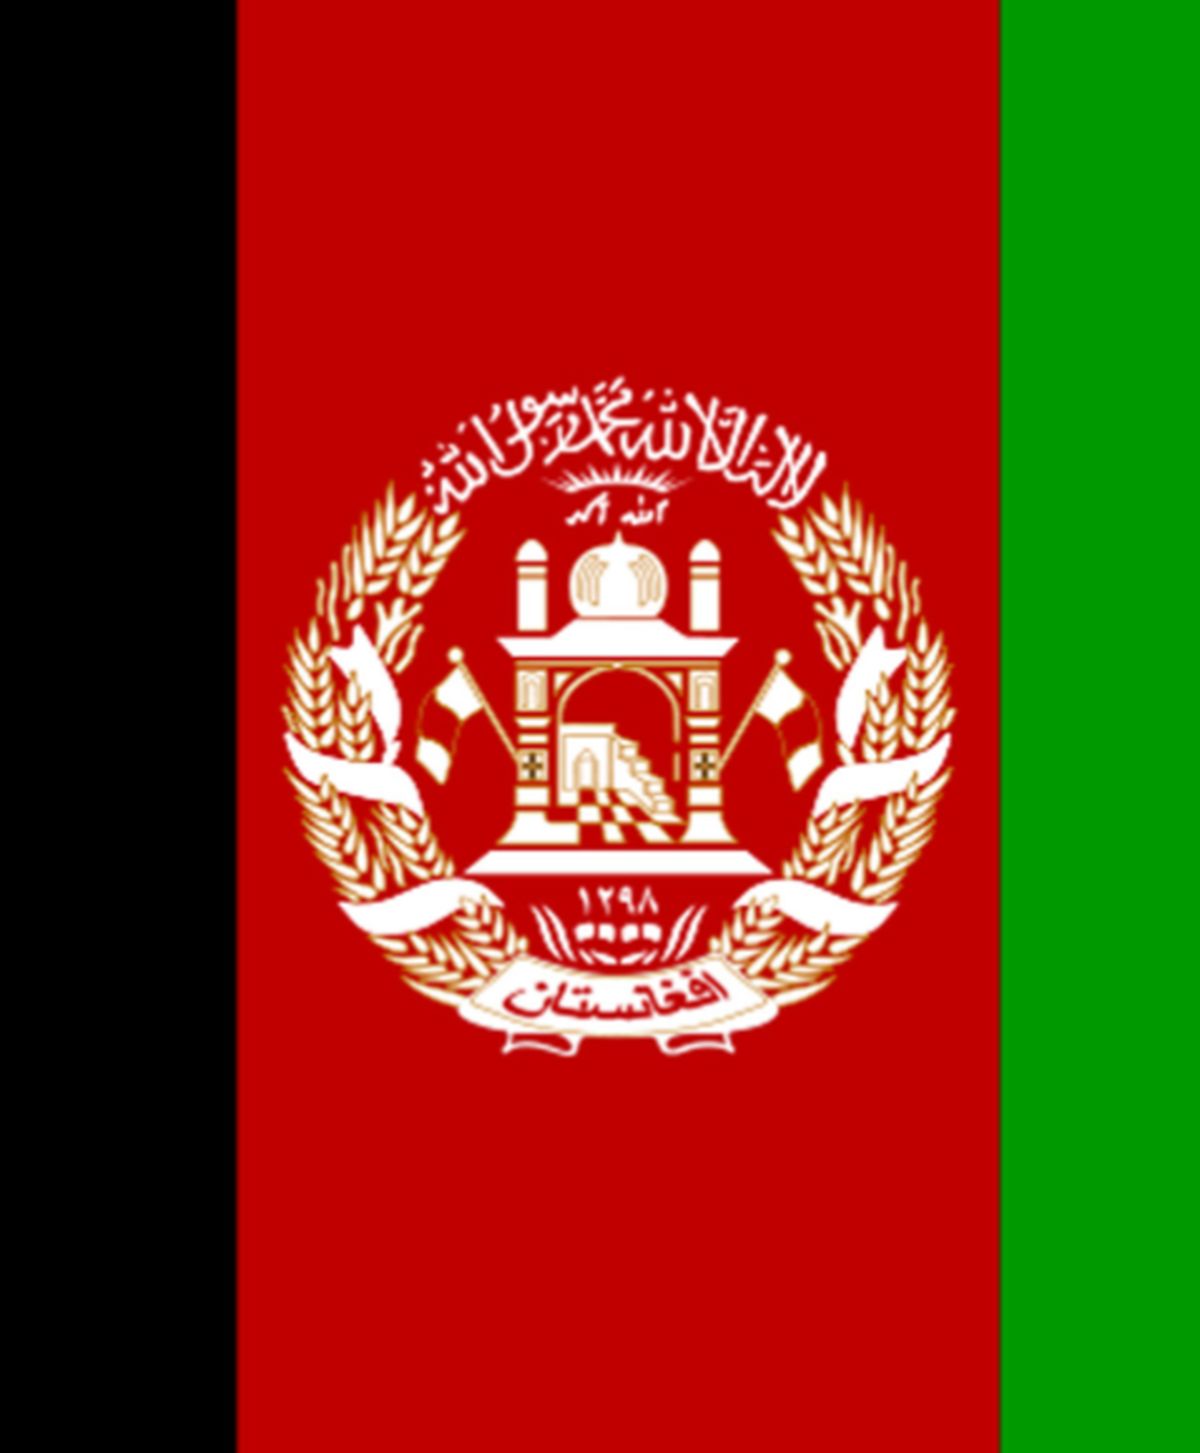 اعلام موجودیت شورايعالی مقاومت براي نجات افغانستان